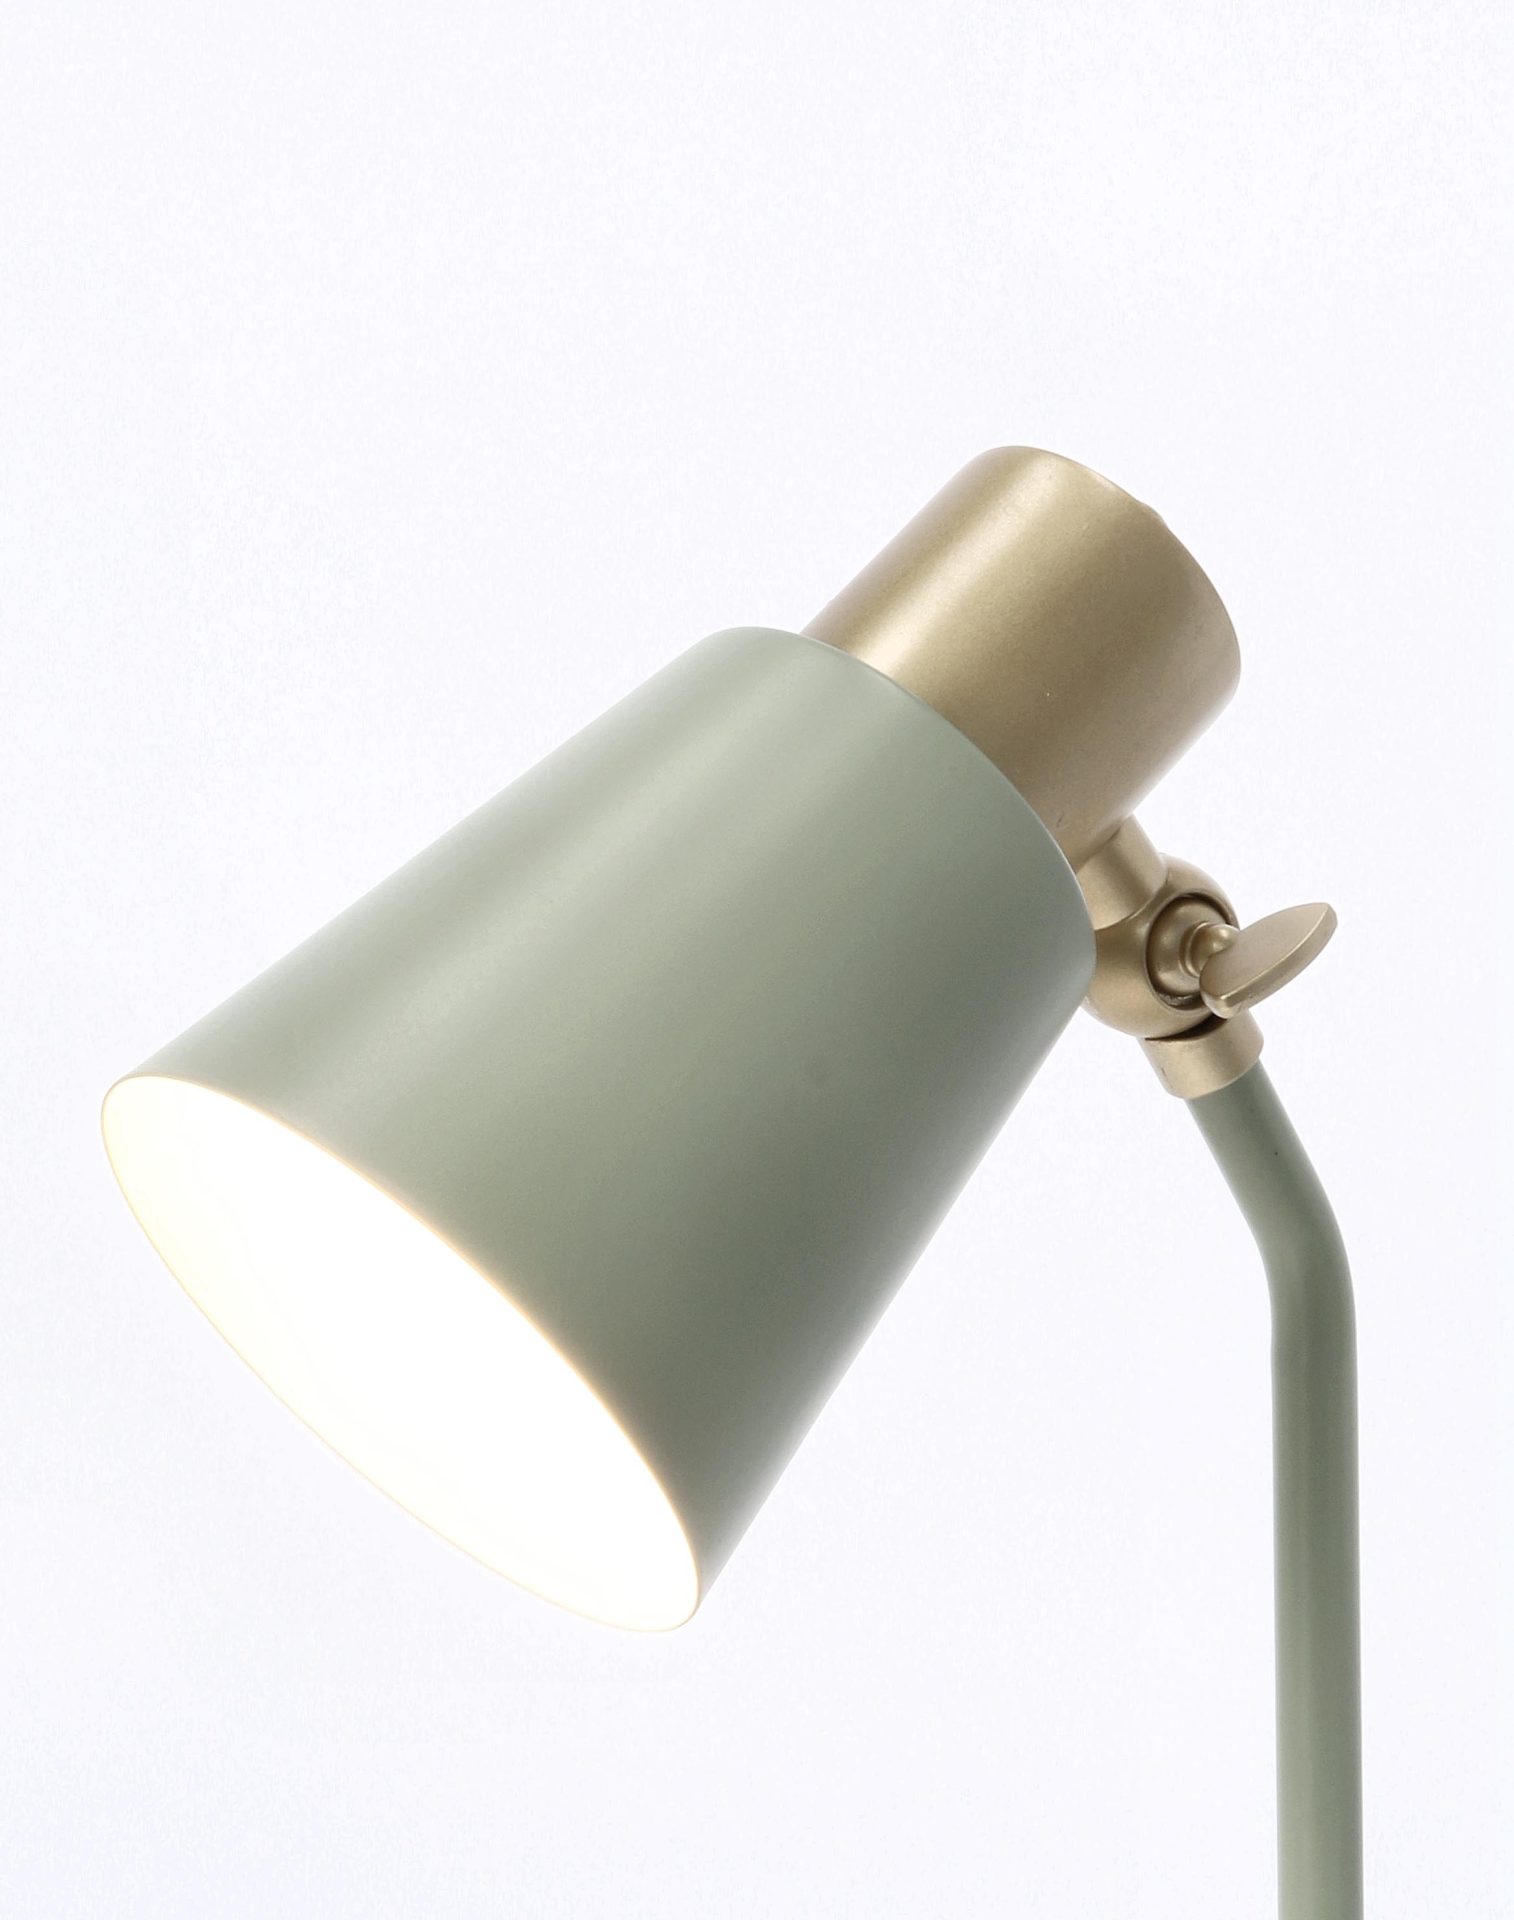 Die Stehleuchte Helsinki überzeugt mit ihrem klassischen Design. Gefertigt wurde sie aus Metall, welches einen Salbei Farbton besitzt. Die Lampe besitzt Applikationen aus Kiefernholz. Die Lampe besitzt eine Höhe von 40 cm.